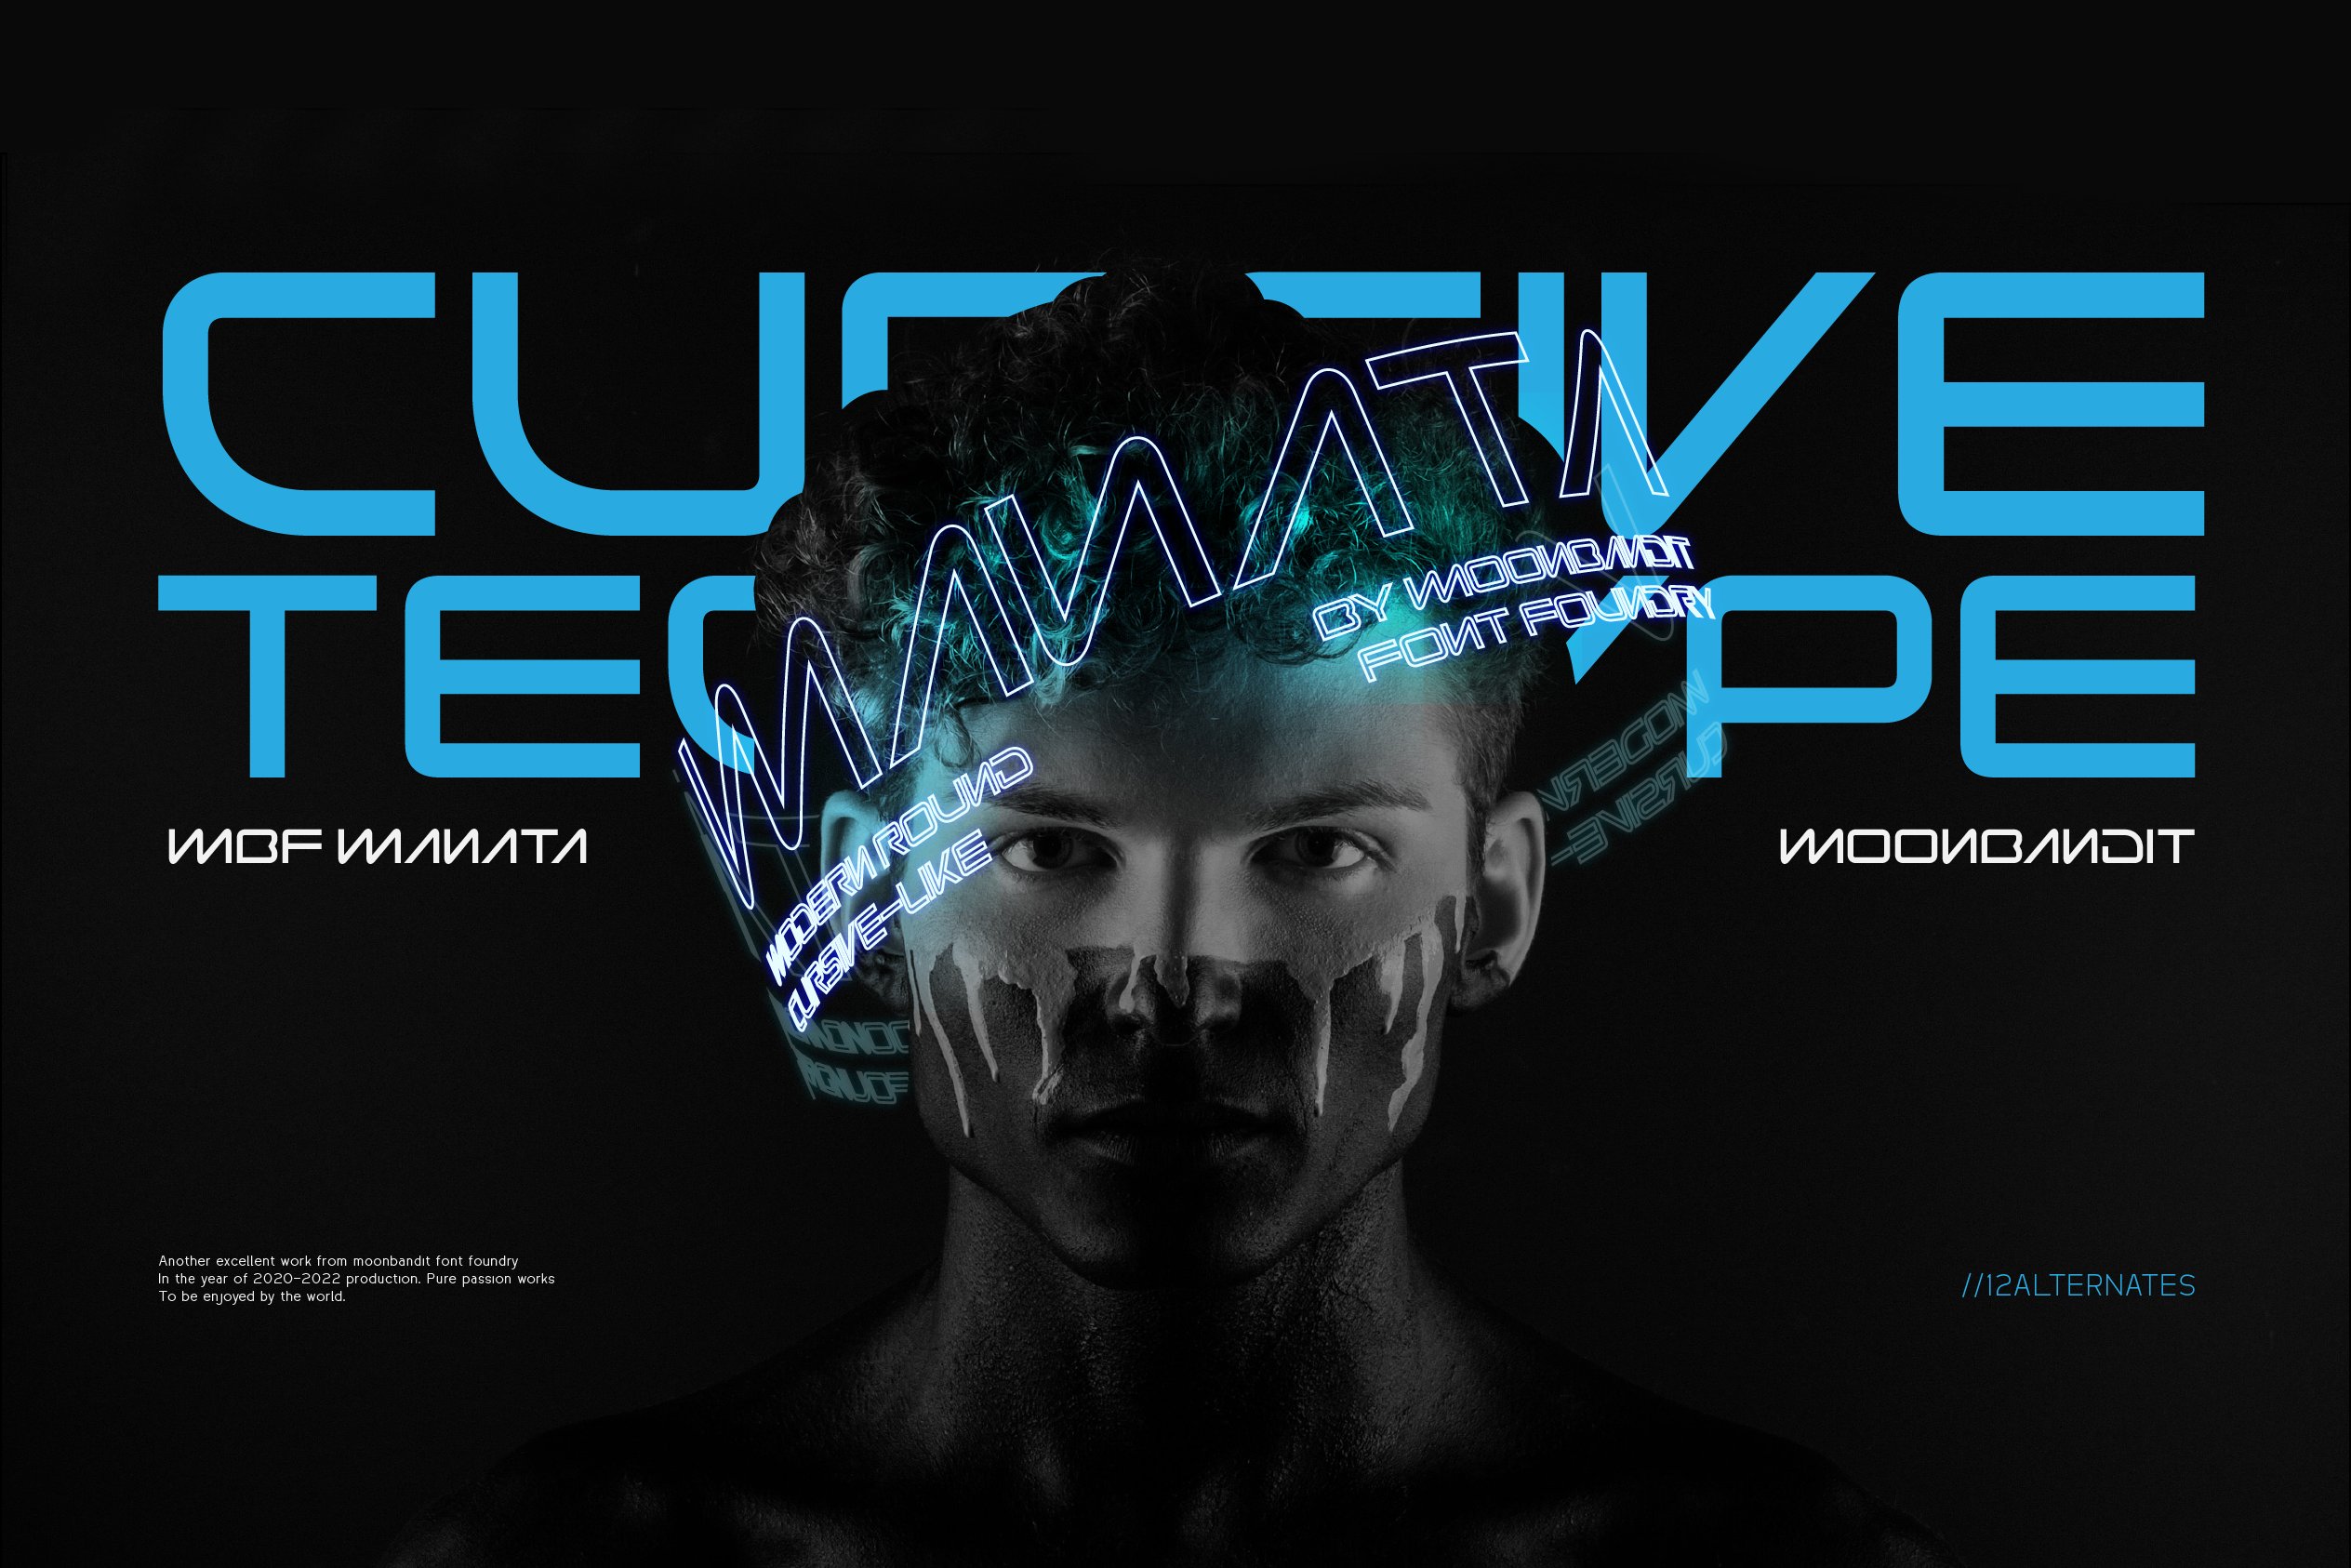 Manata-futuristic semi-cursive tech cover image.